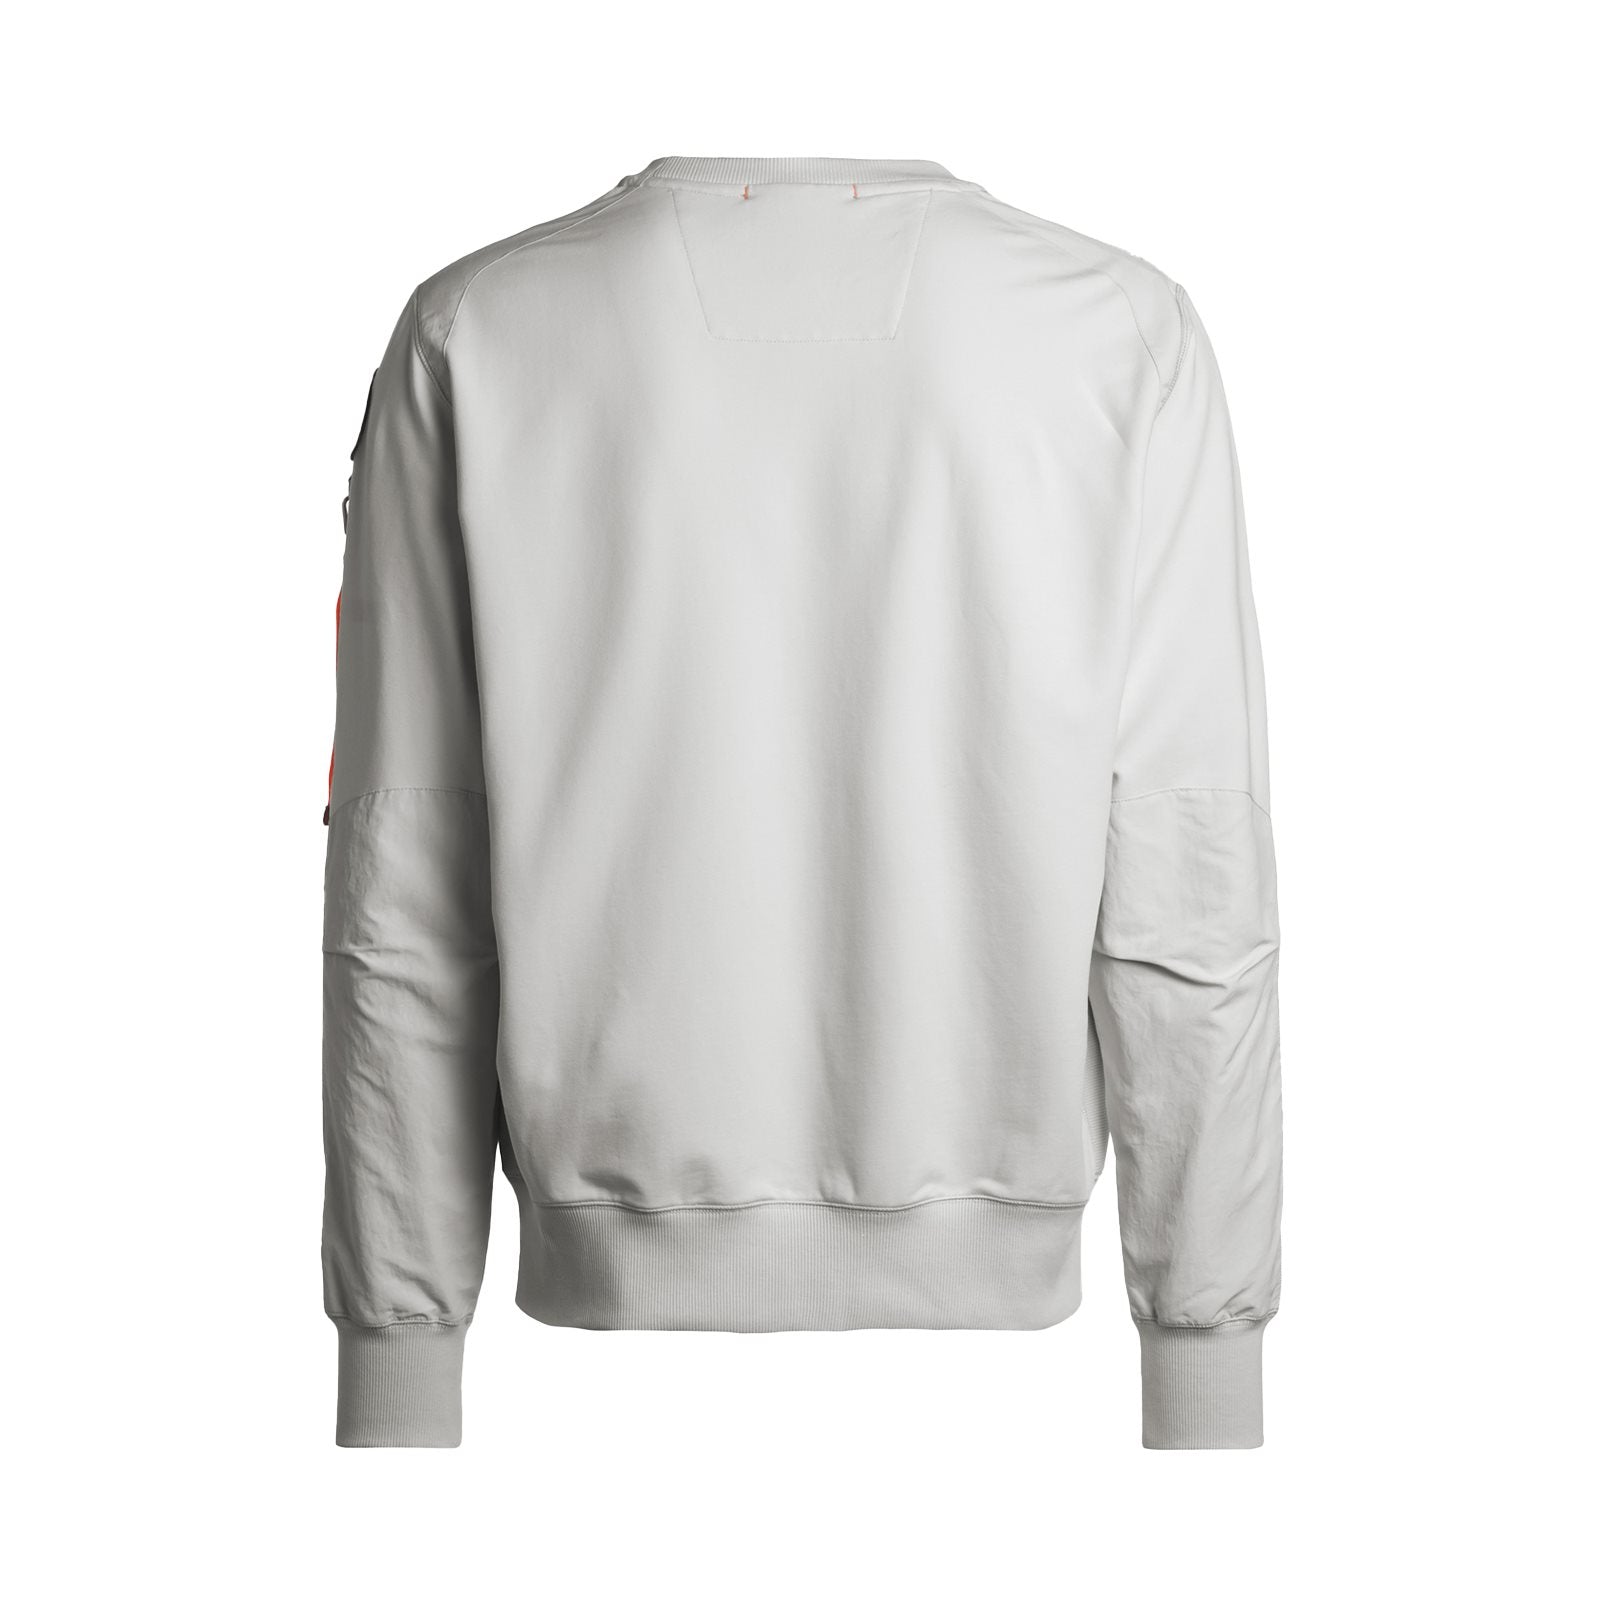 Sabre fleece nylon sweatshirt